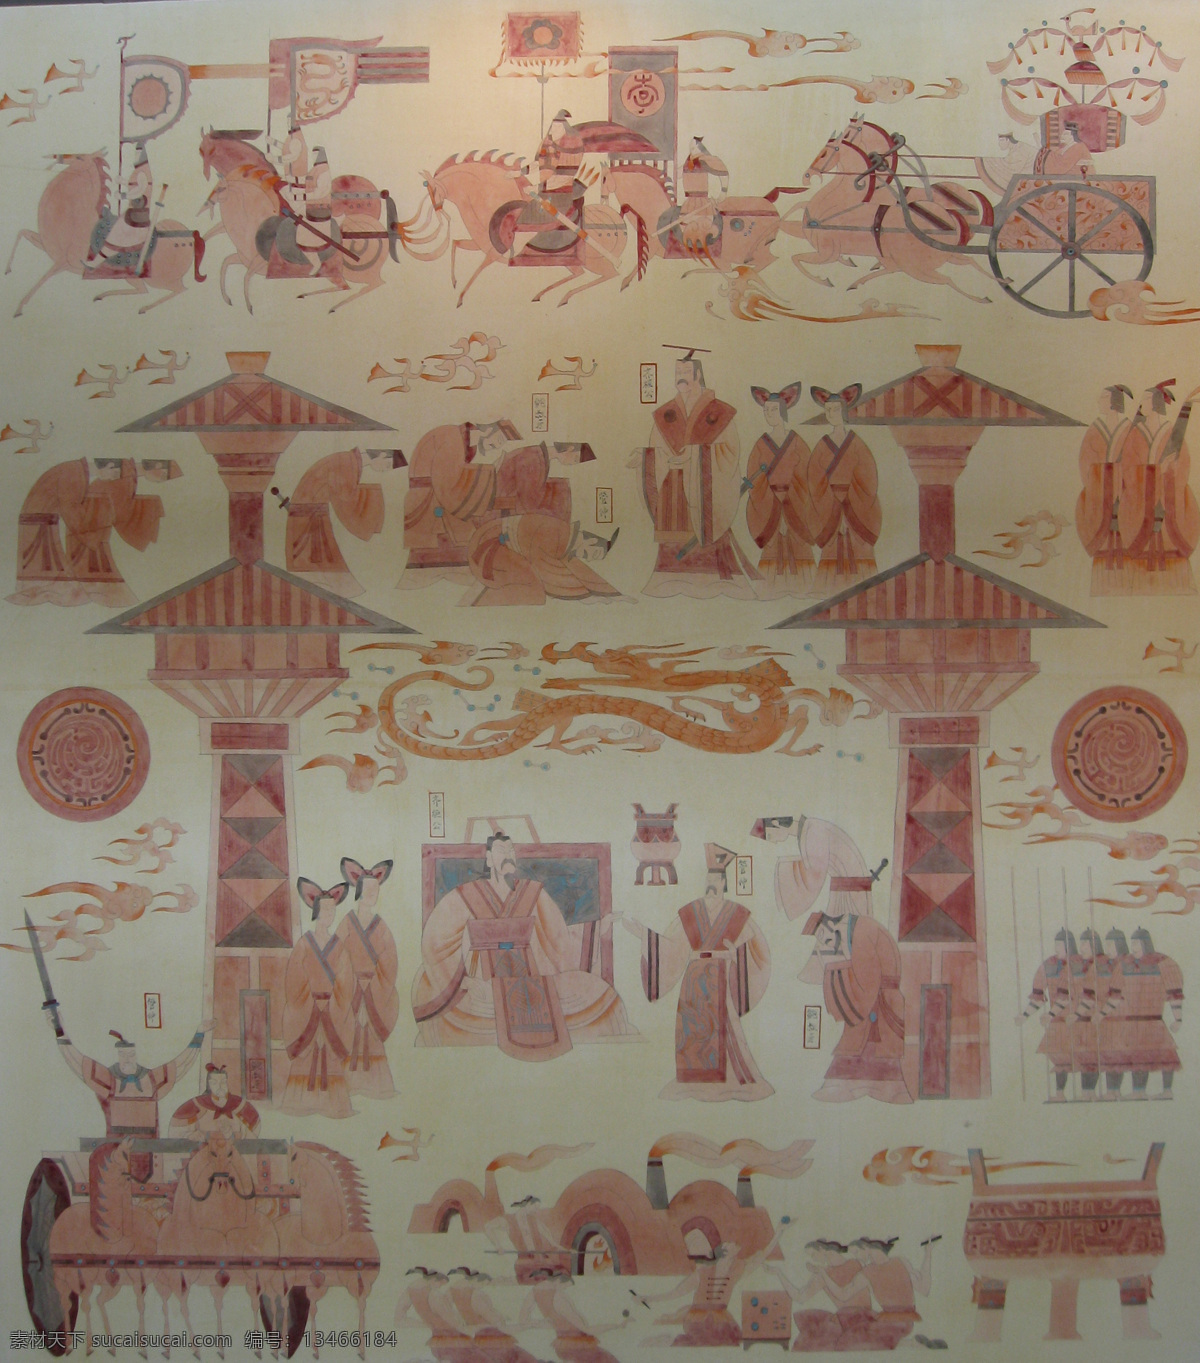 壁画 远古 朝代 艺术 绘画 人物 男人女人 马车 兵器 士兵 龙 绘画书法 文化艺术